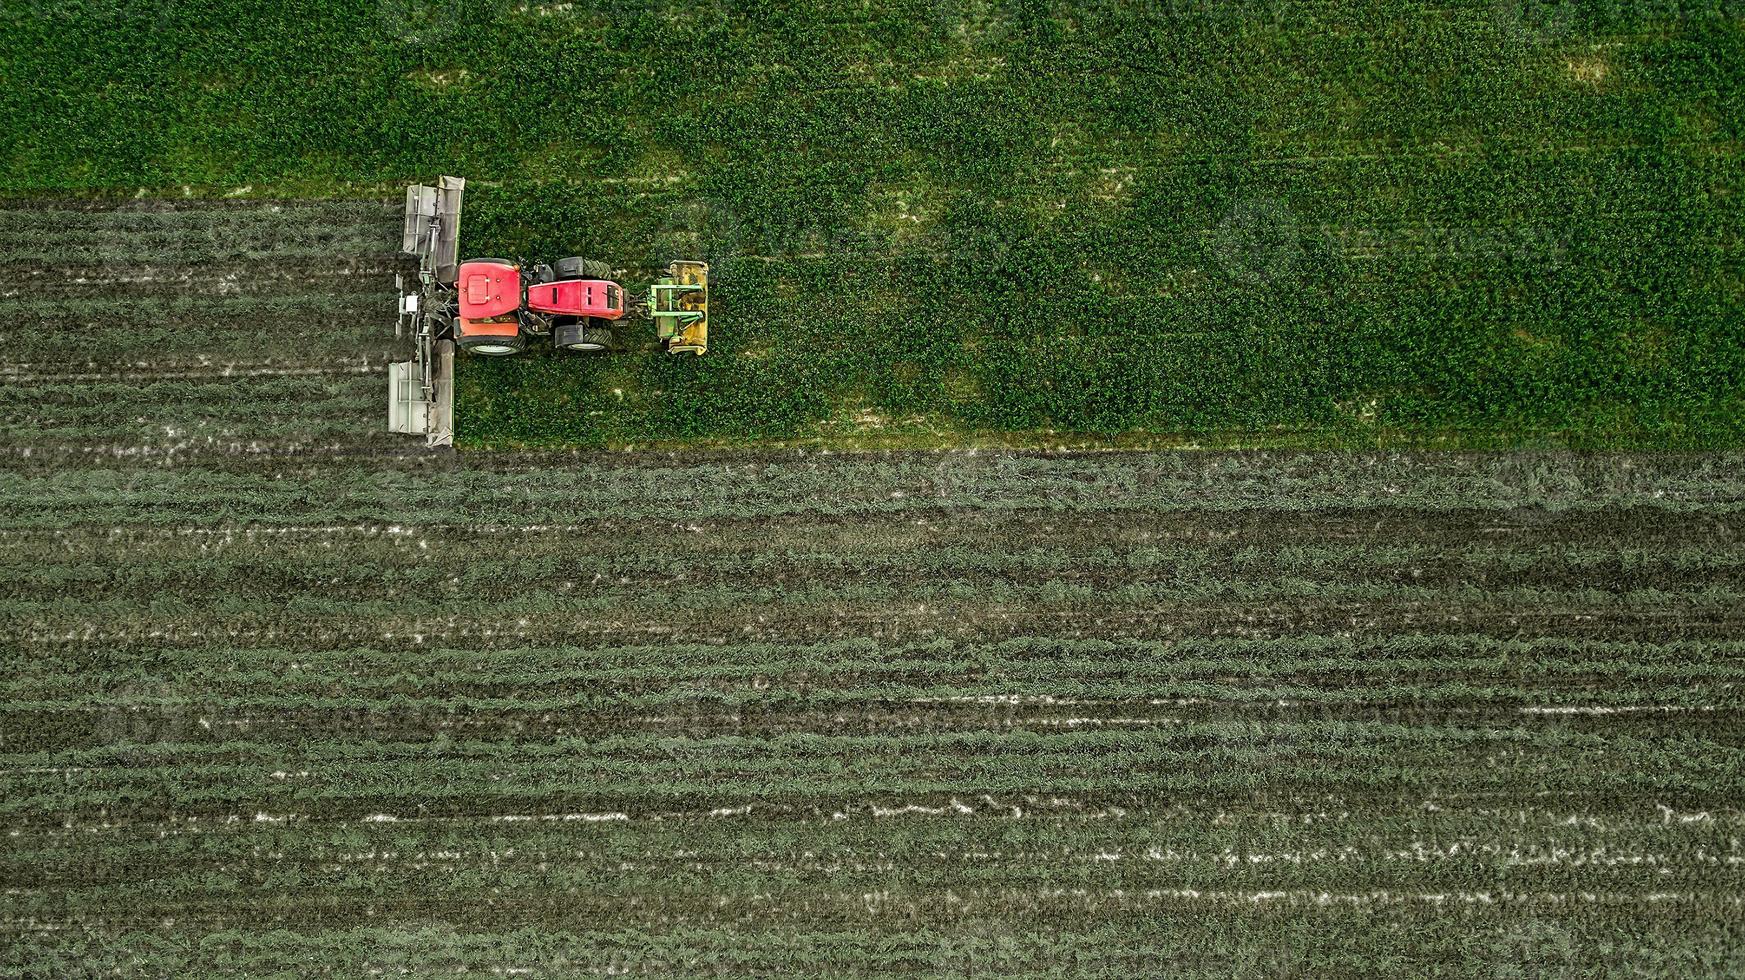 un tractor corta un campo de fotografía aérea con drones foto